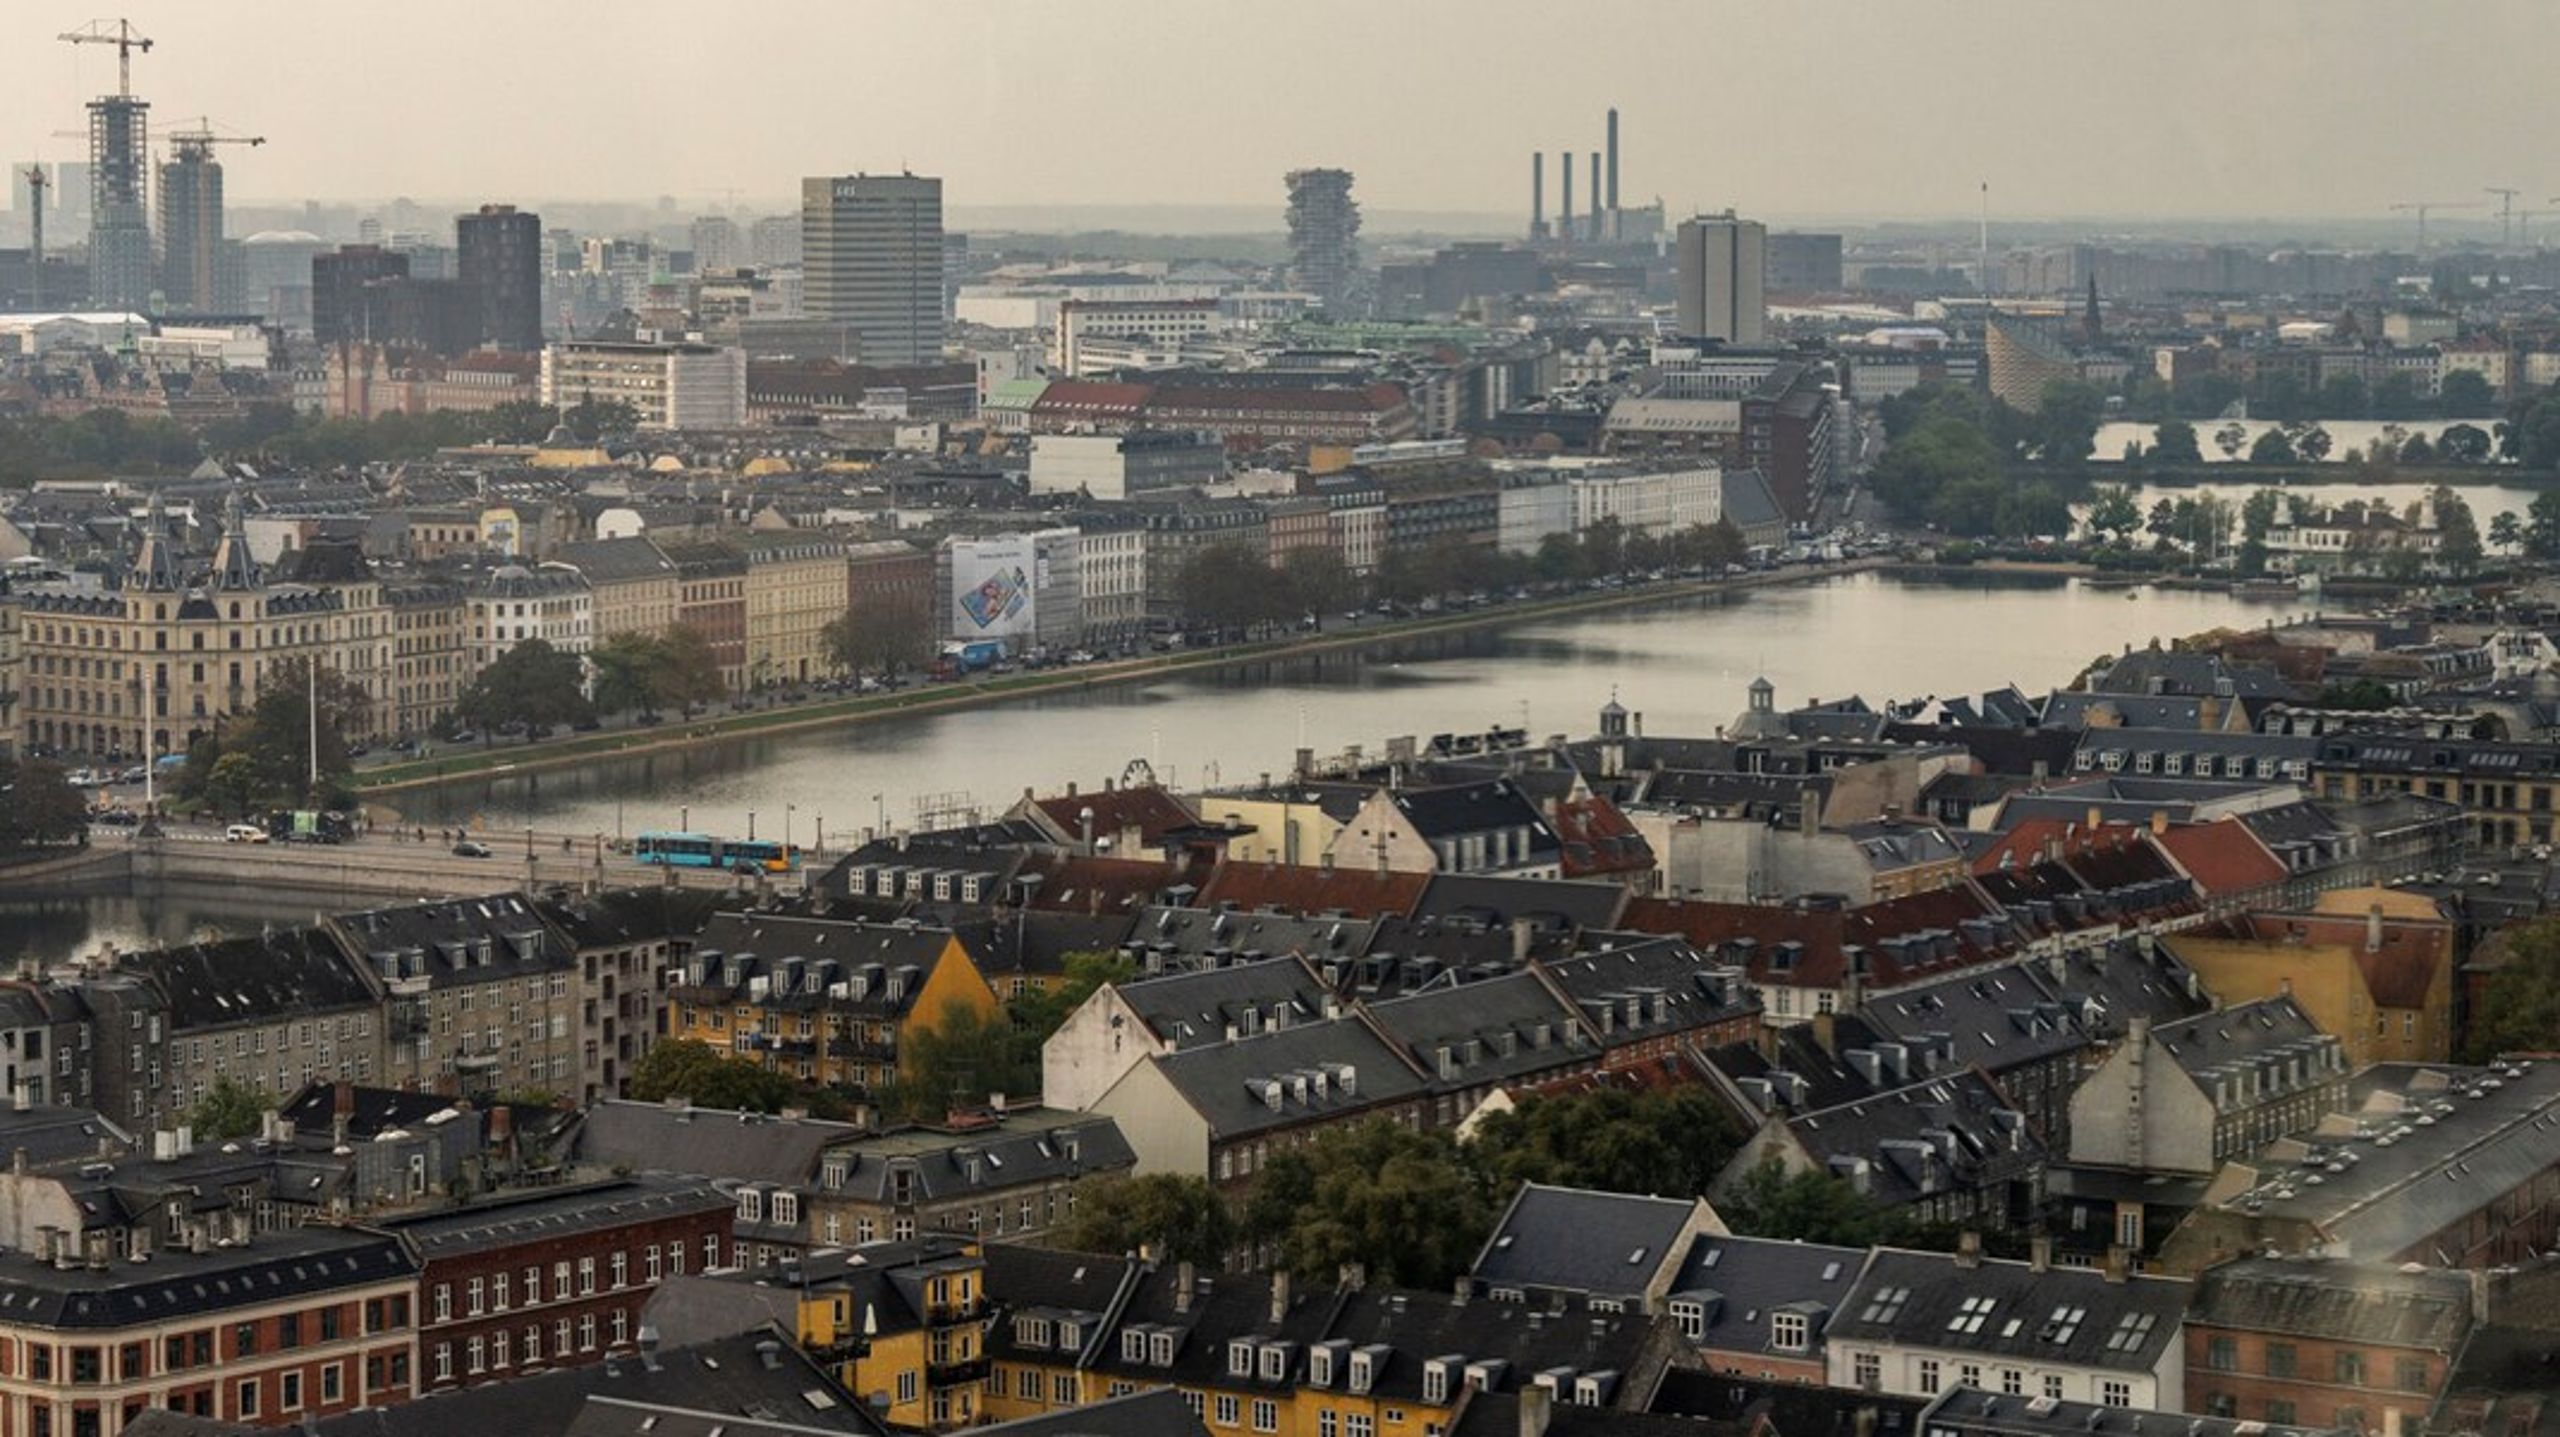 EU's bygningsdirektiv stiller krav om, at alle nye bygninger skal være klimaneutrale fra 2030, men i København bor langt de fleste borgere i boliger, som for længst er bygget, som måske er 100 år gamle. Derfor vil De Radikale gå længere med krav om, at alle eksisterende boliger i København skal energirenoveres op til mindst energimærke C i 2030. Det vil stille krav til godt halvdelen af alle boliger i København.